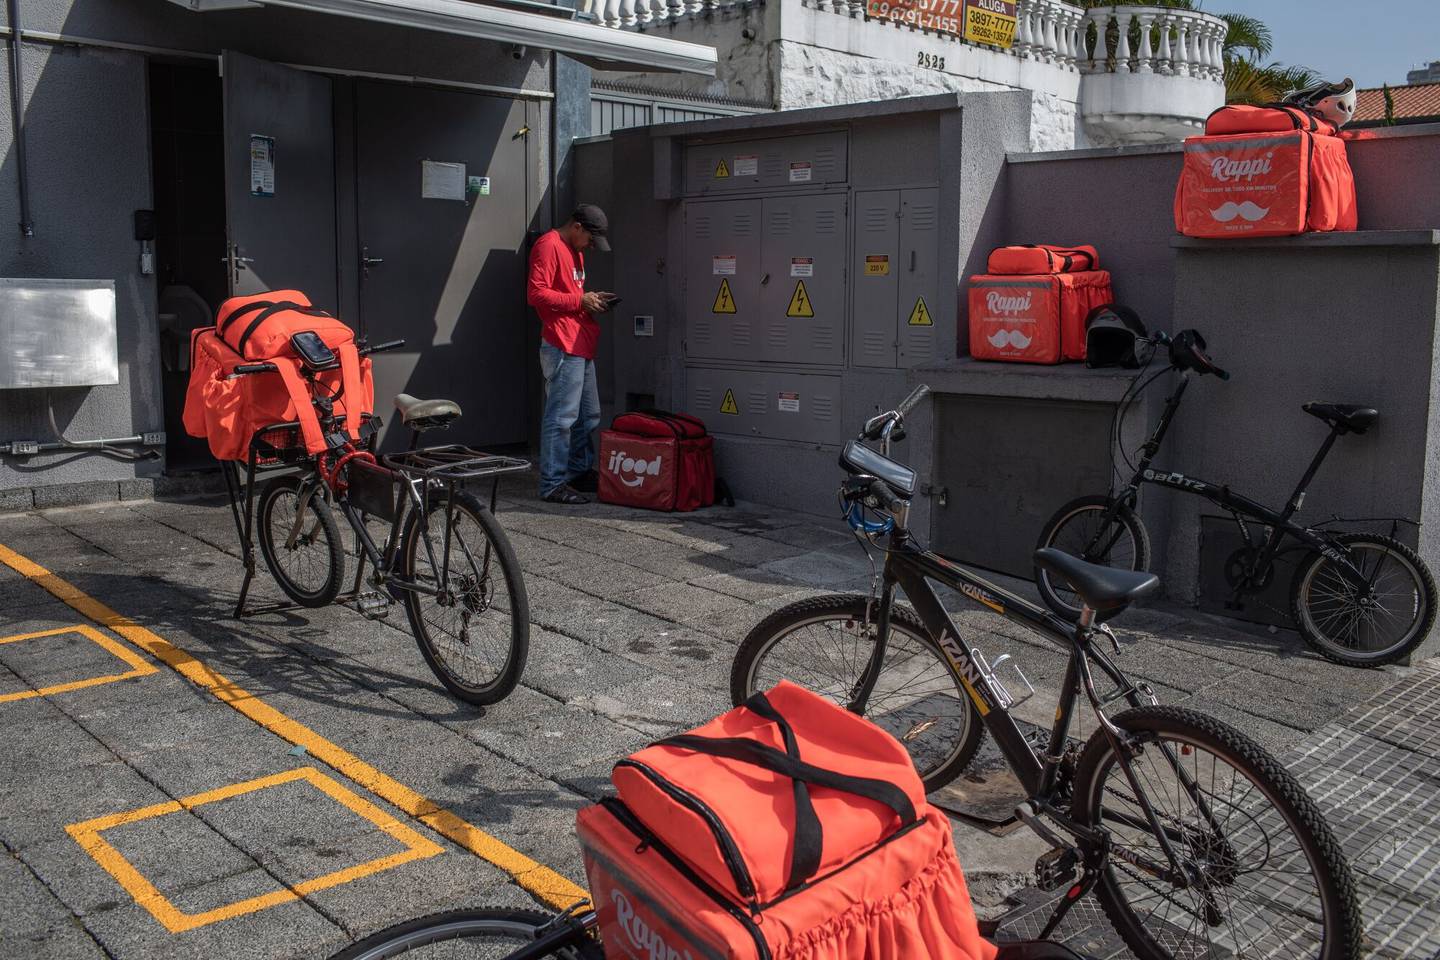 Mochilas aislantes Rappi cerca de bicicletas en Sao Paulo, Brasil, el miércoles 1 de abril de 2020. Mientras la pandemia de coronavirus estrangula las economías y deja a la gente sin trabajo, los repartidores de comida compiten por los pedidos.